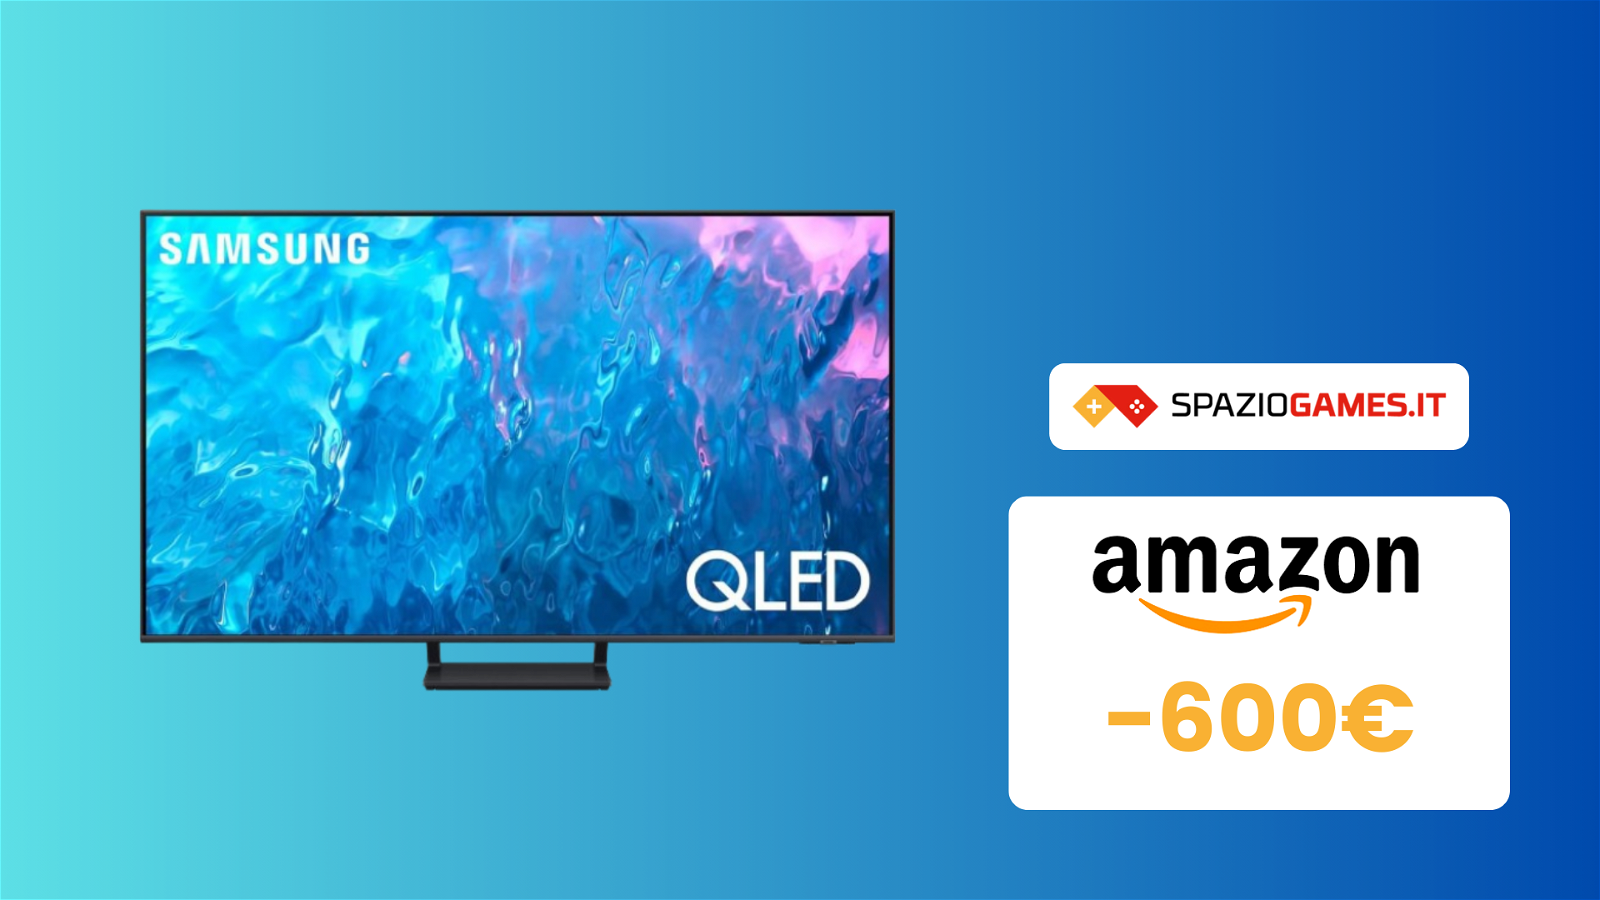 Smart TV Samsung QLED da 65": perfetta per il gaming e scontatissima! (-600€)